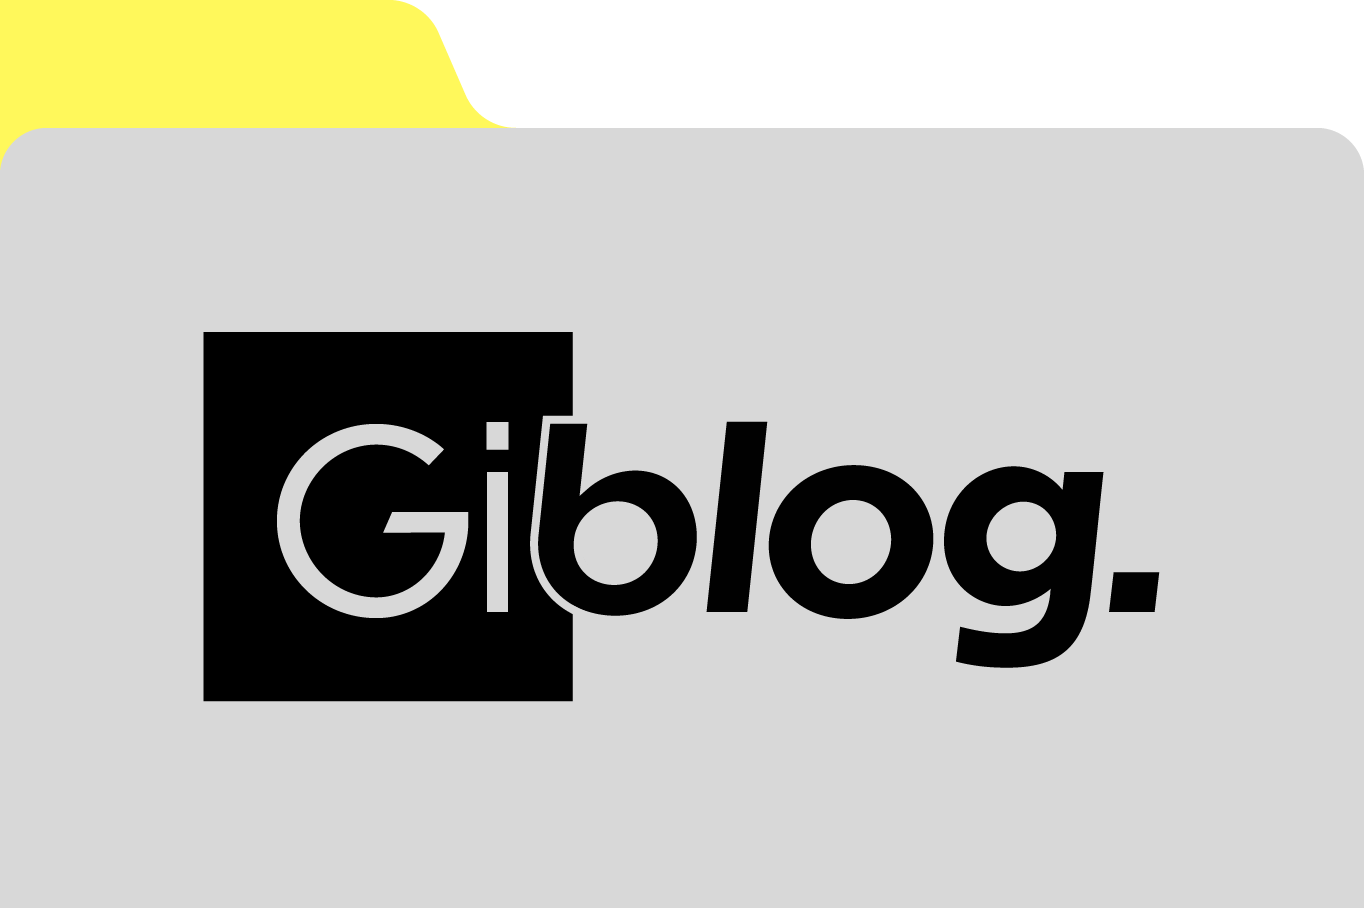 GiBlog